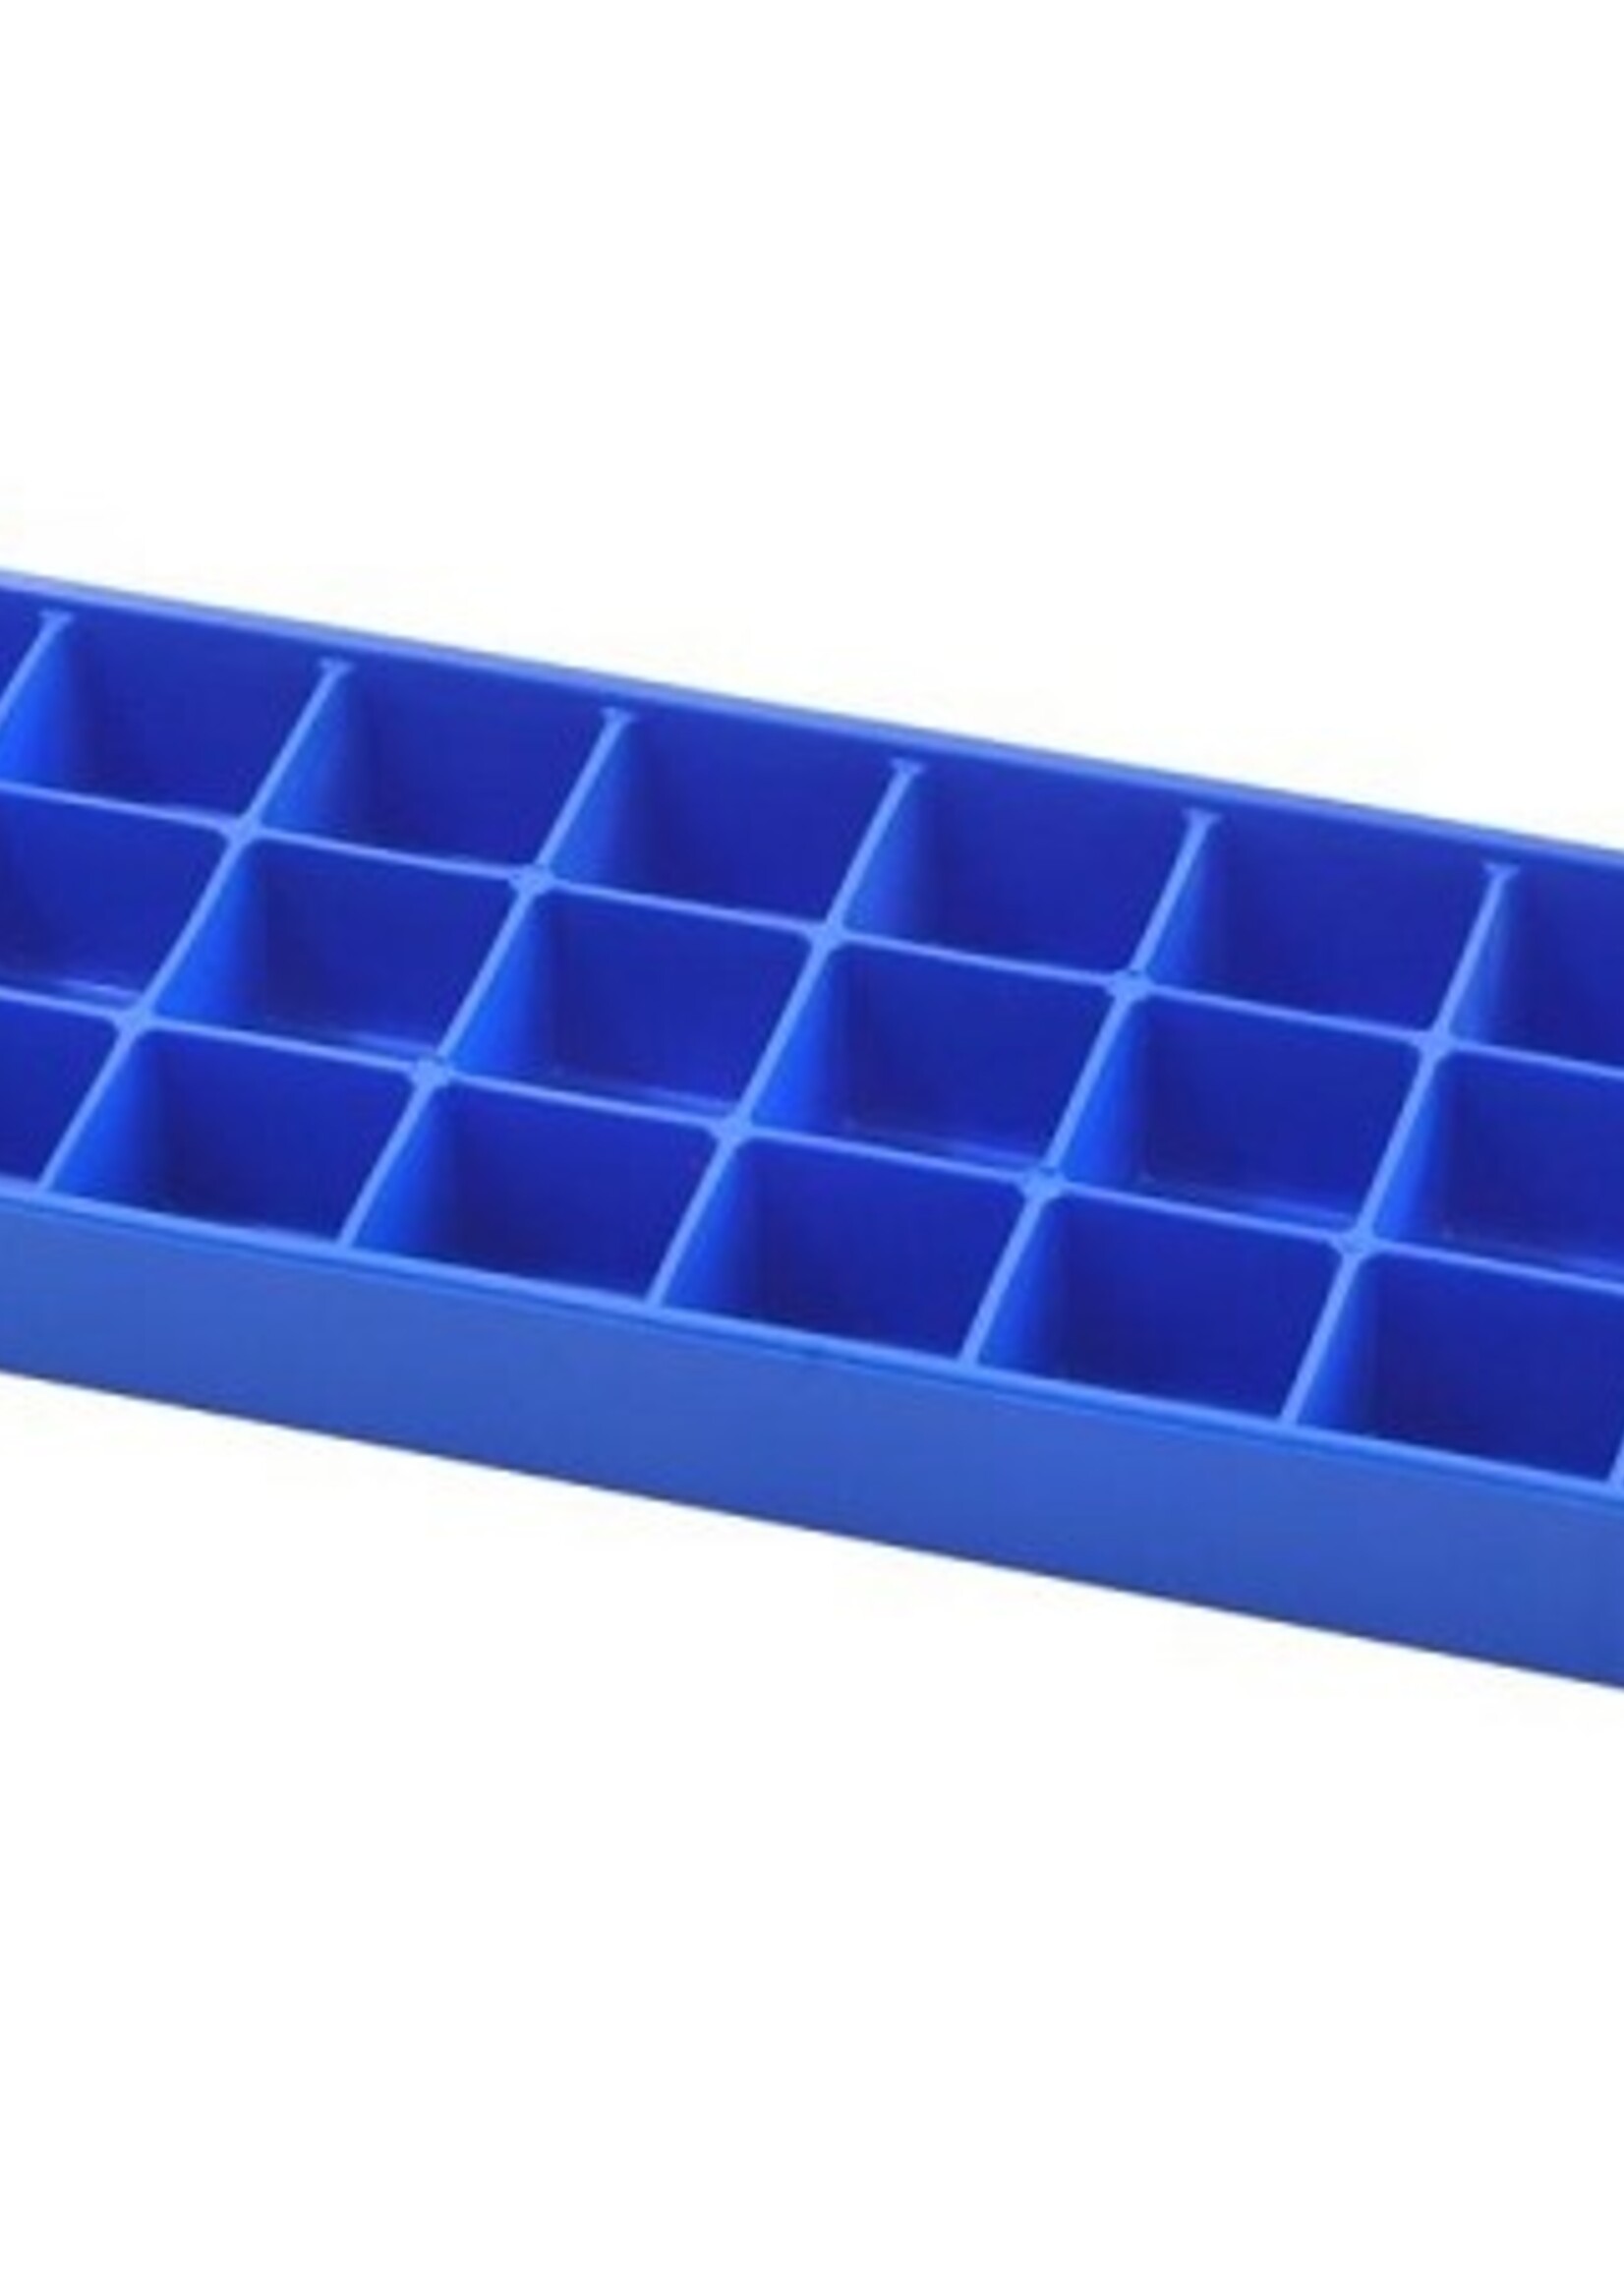 Metaltex IJsblokjesmaker rubber 26x8,5x2,5cm blauw